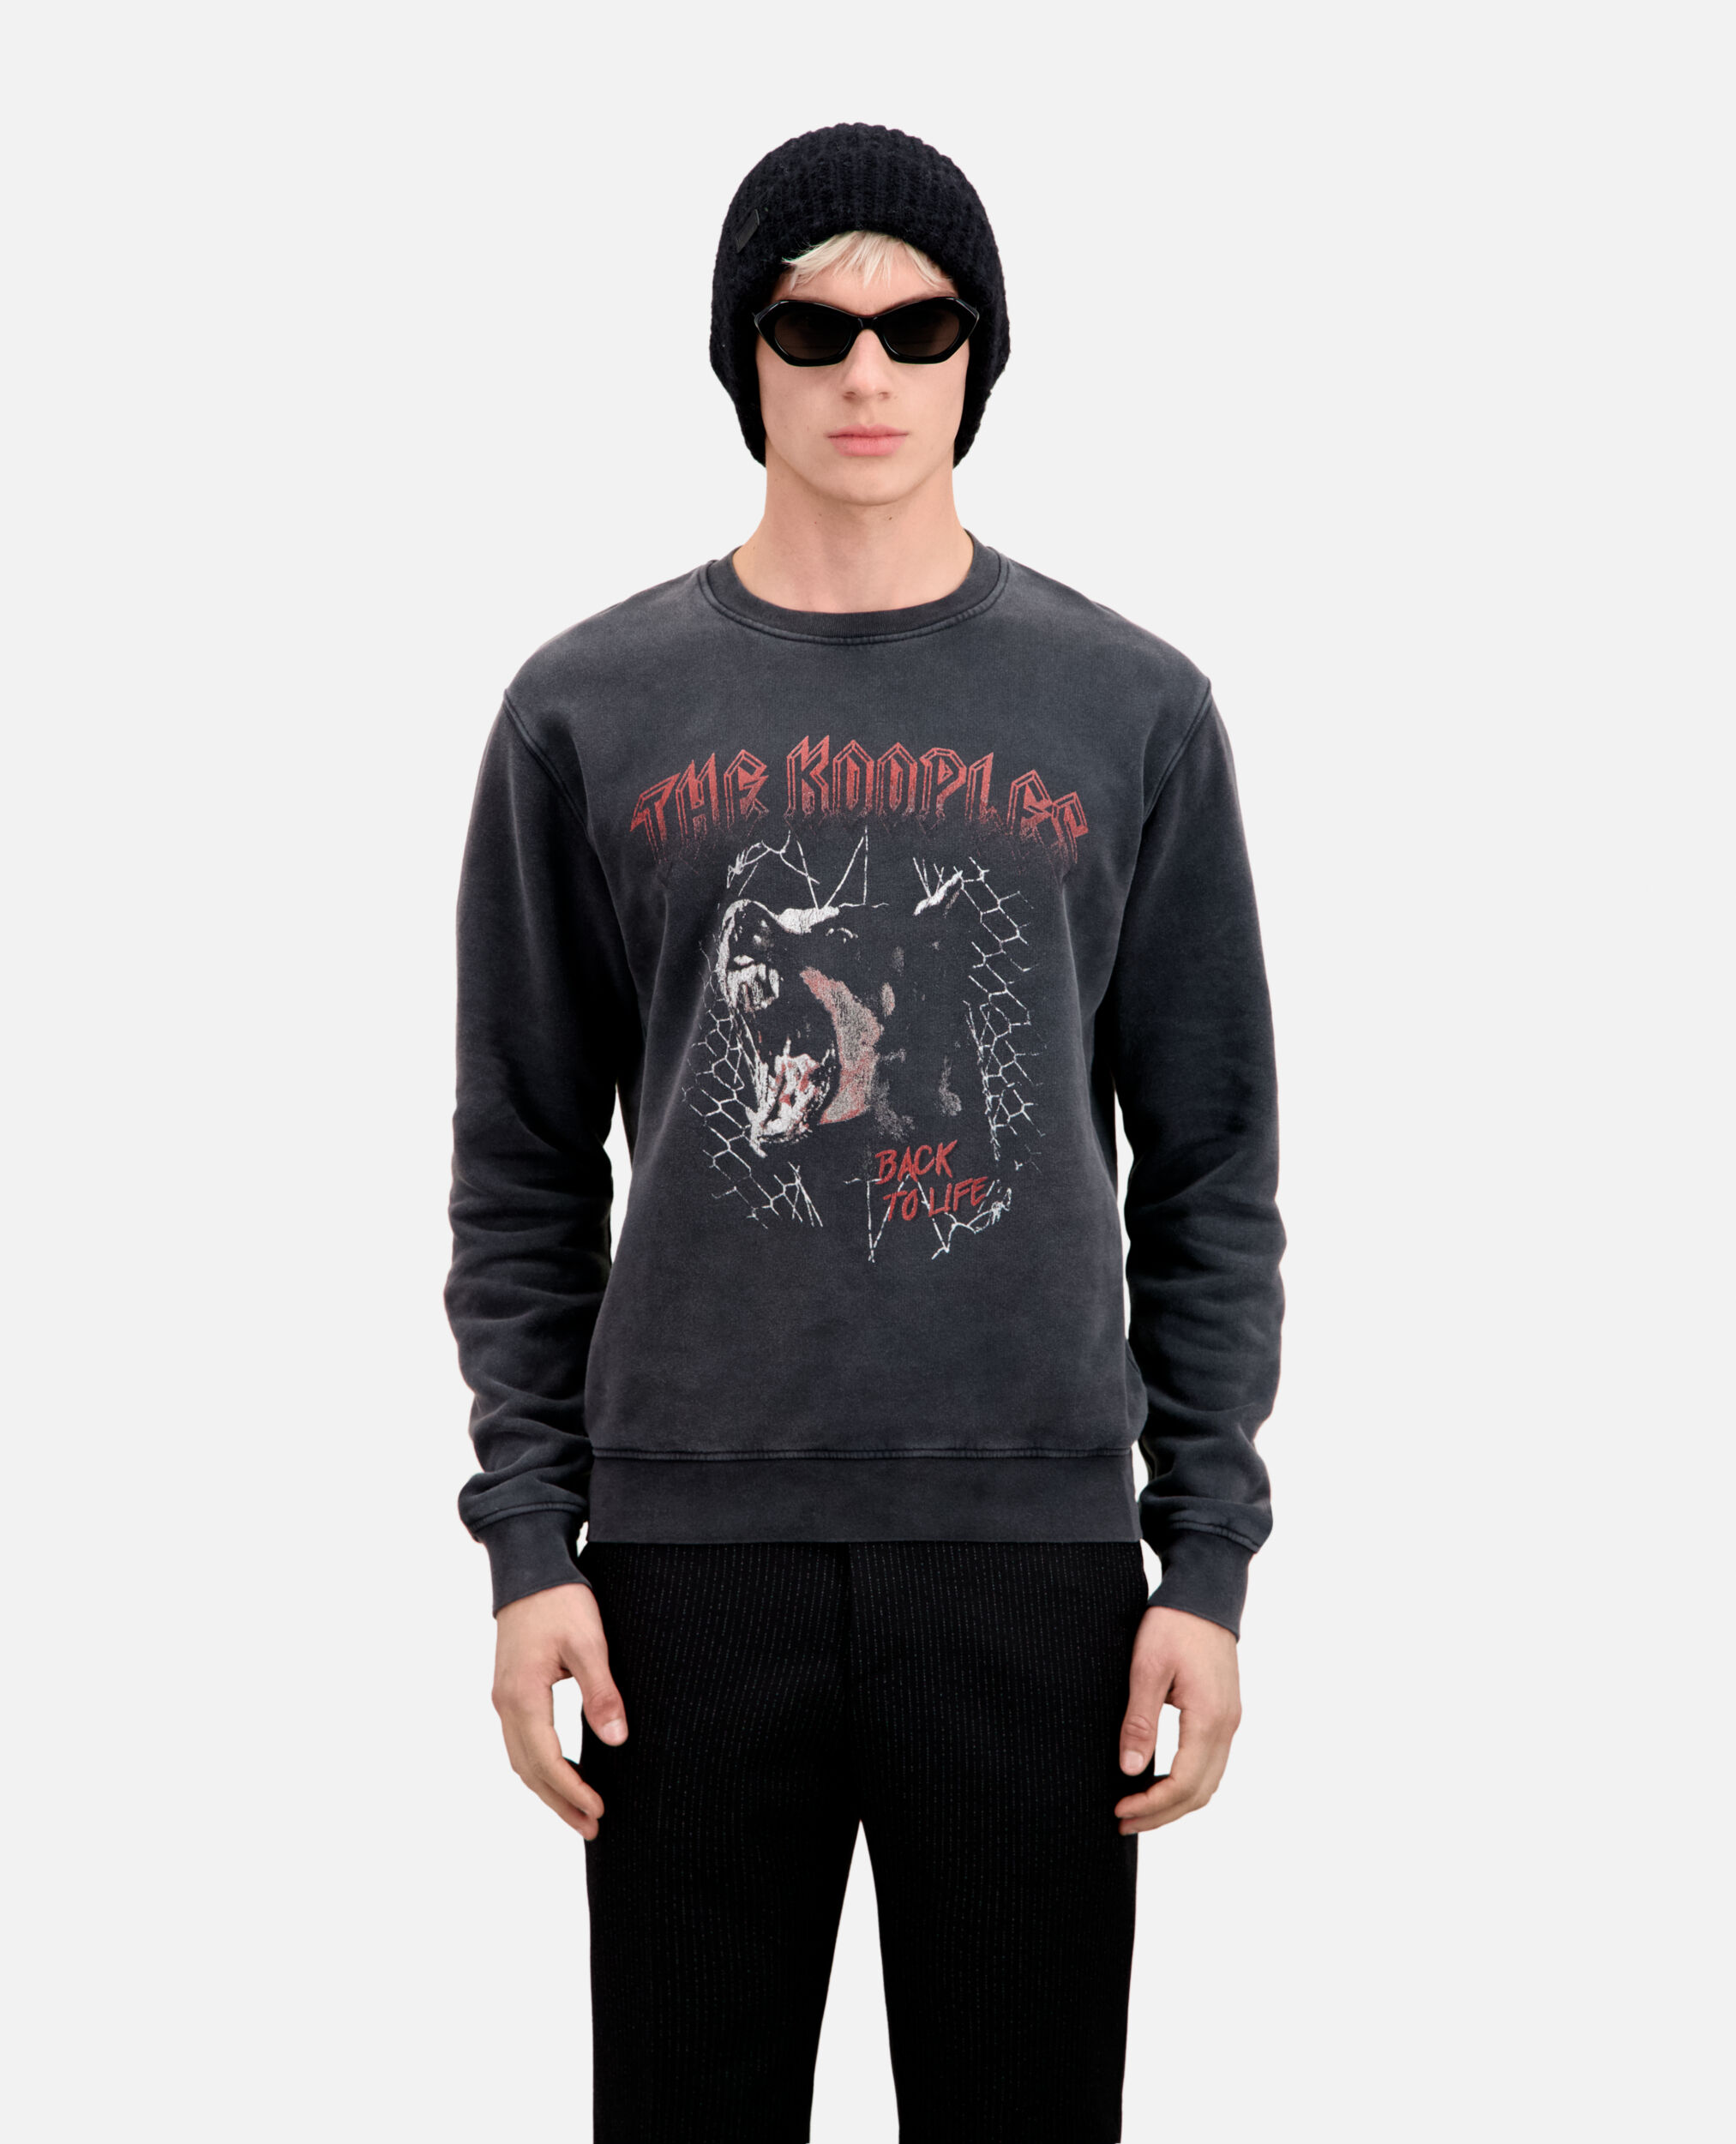 Men's Black sweatshirt with Barking dog serigraphy, BLACK WASHED, hi-res image number null